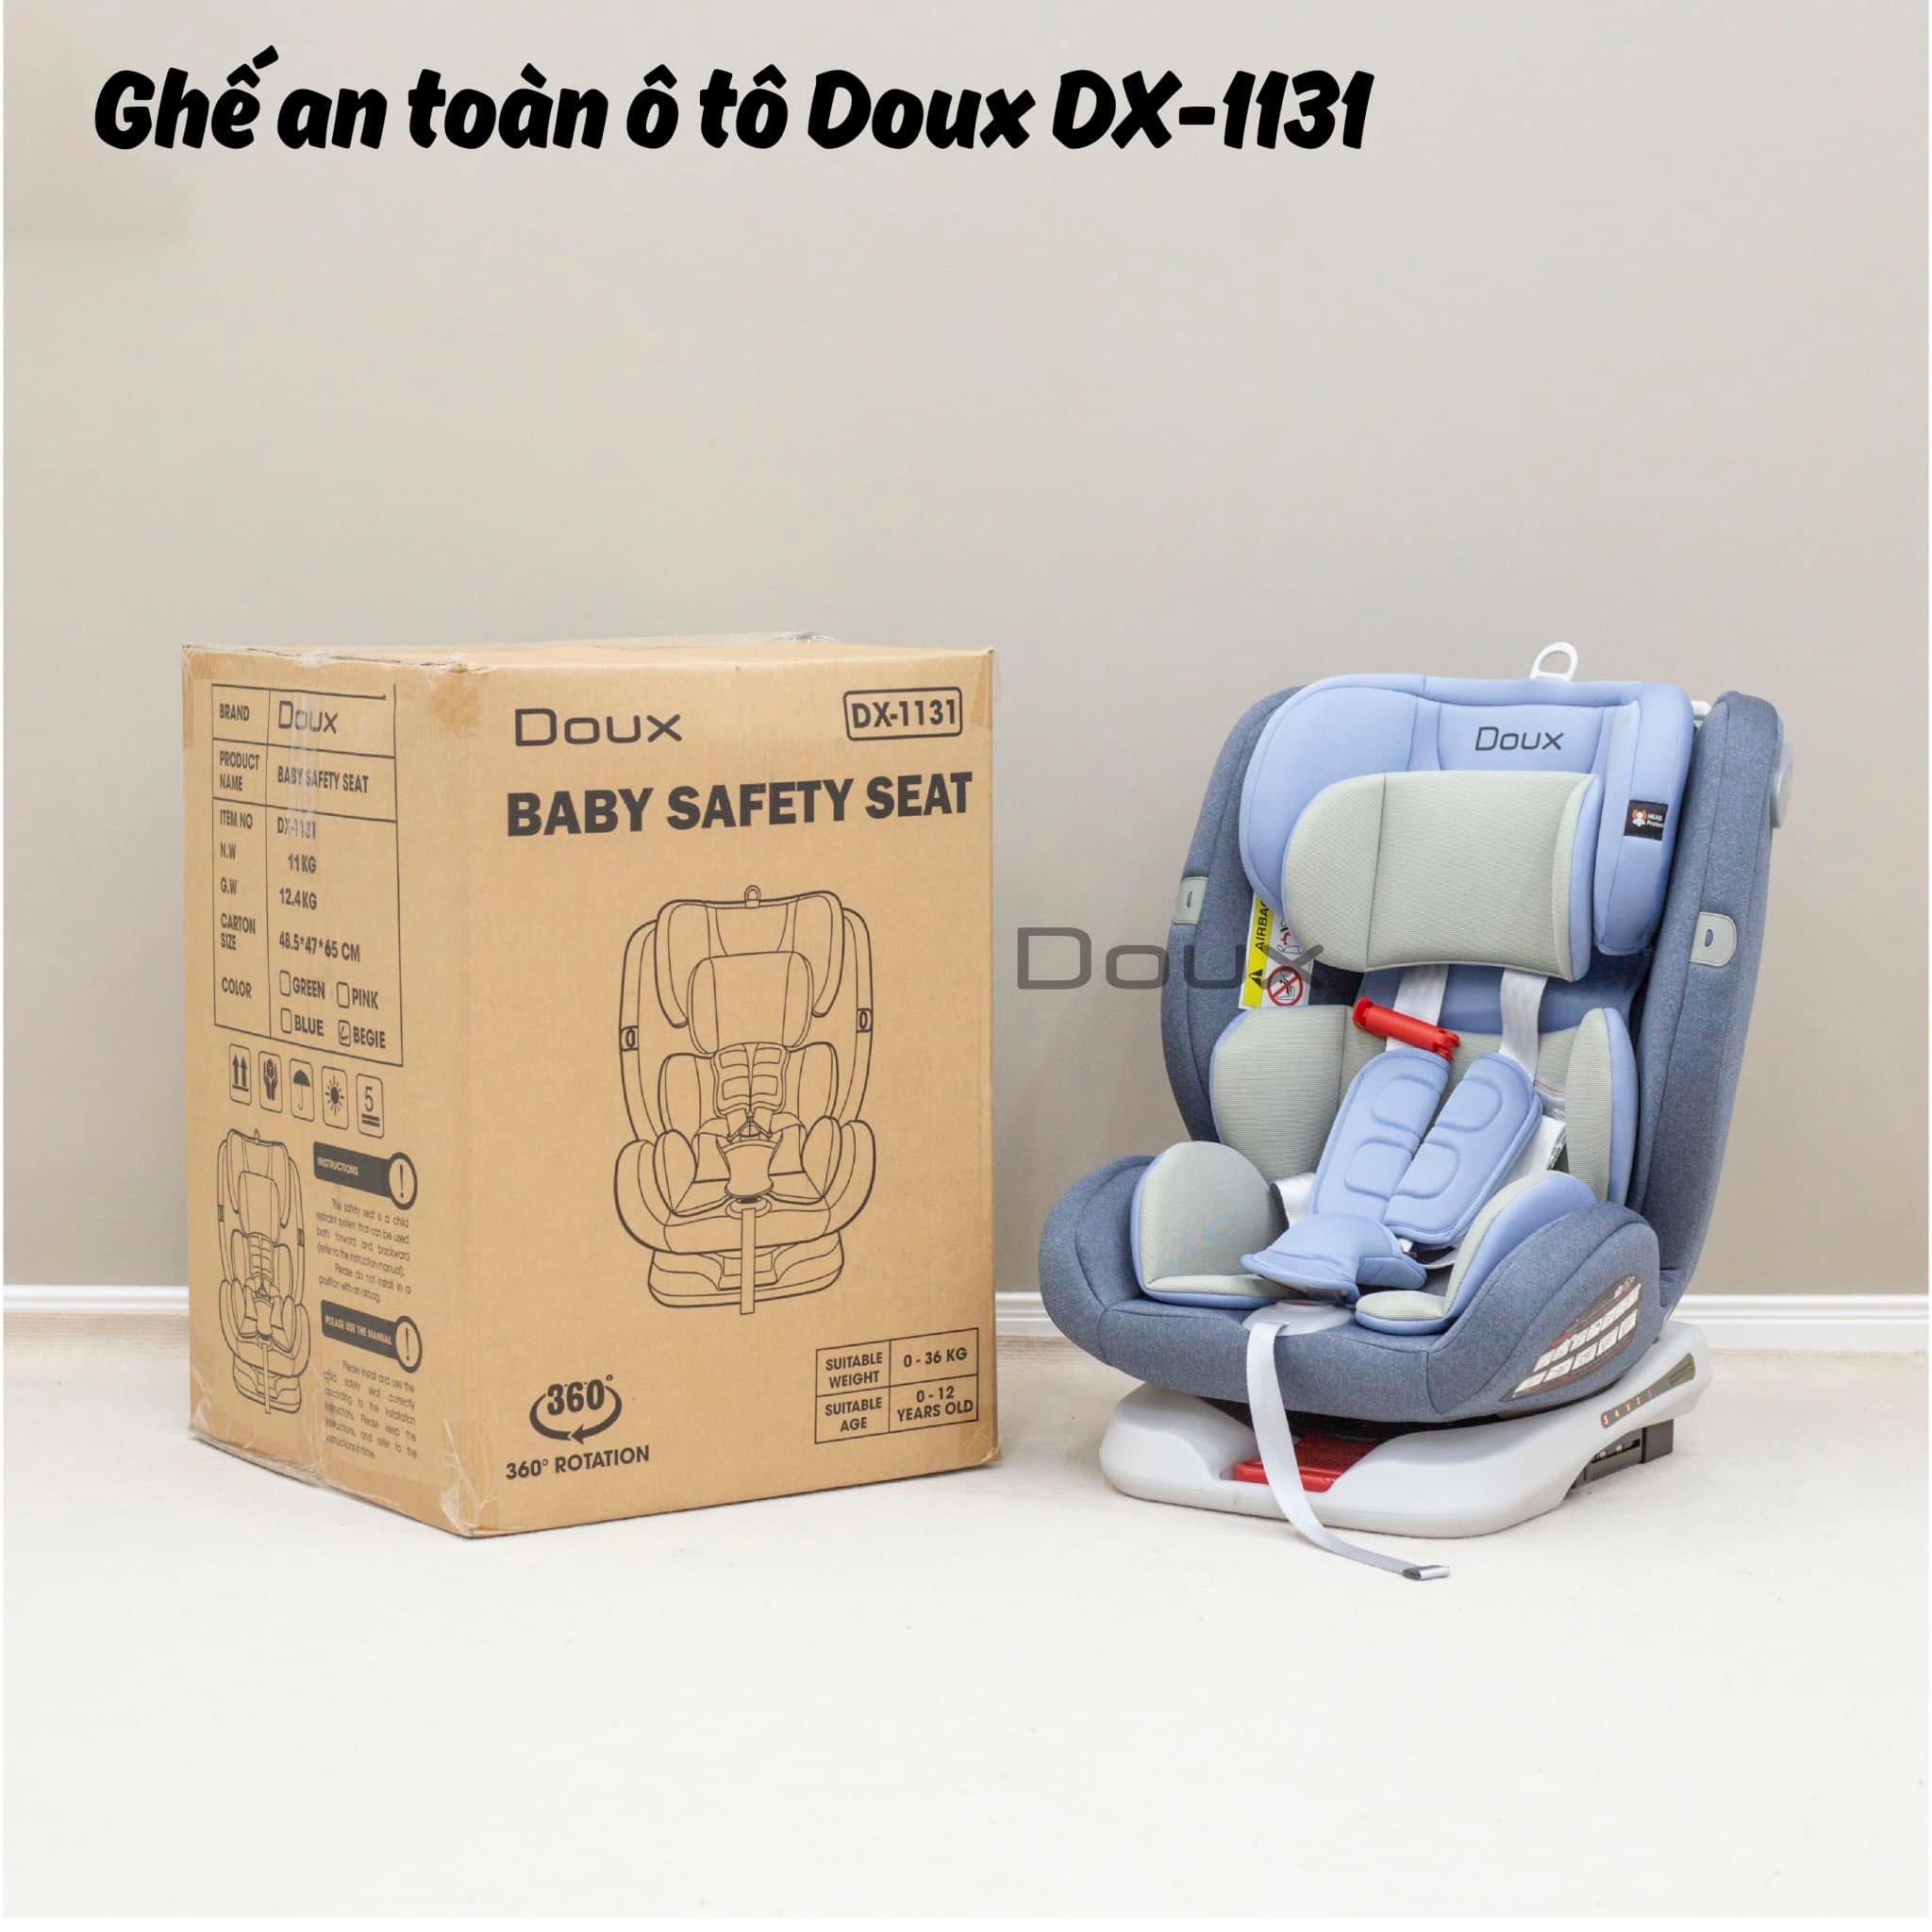 Ghế ngồi ôtô Doux DX-1131 có đai an toàn cho bé, đa năng xoay 360 độ